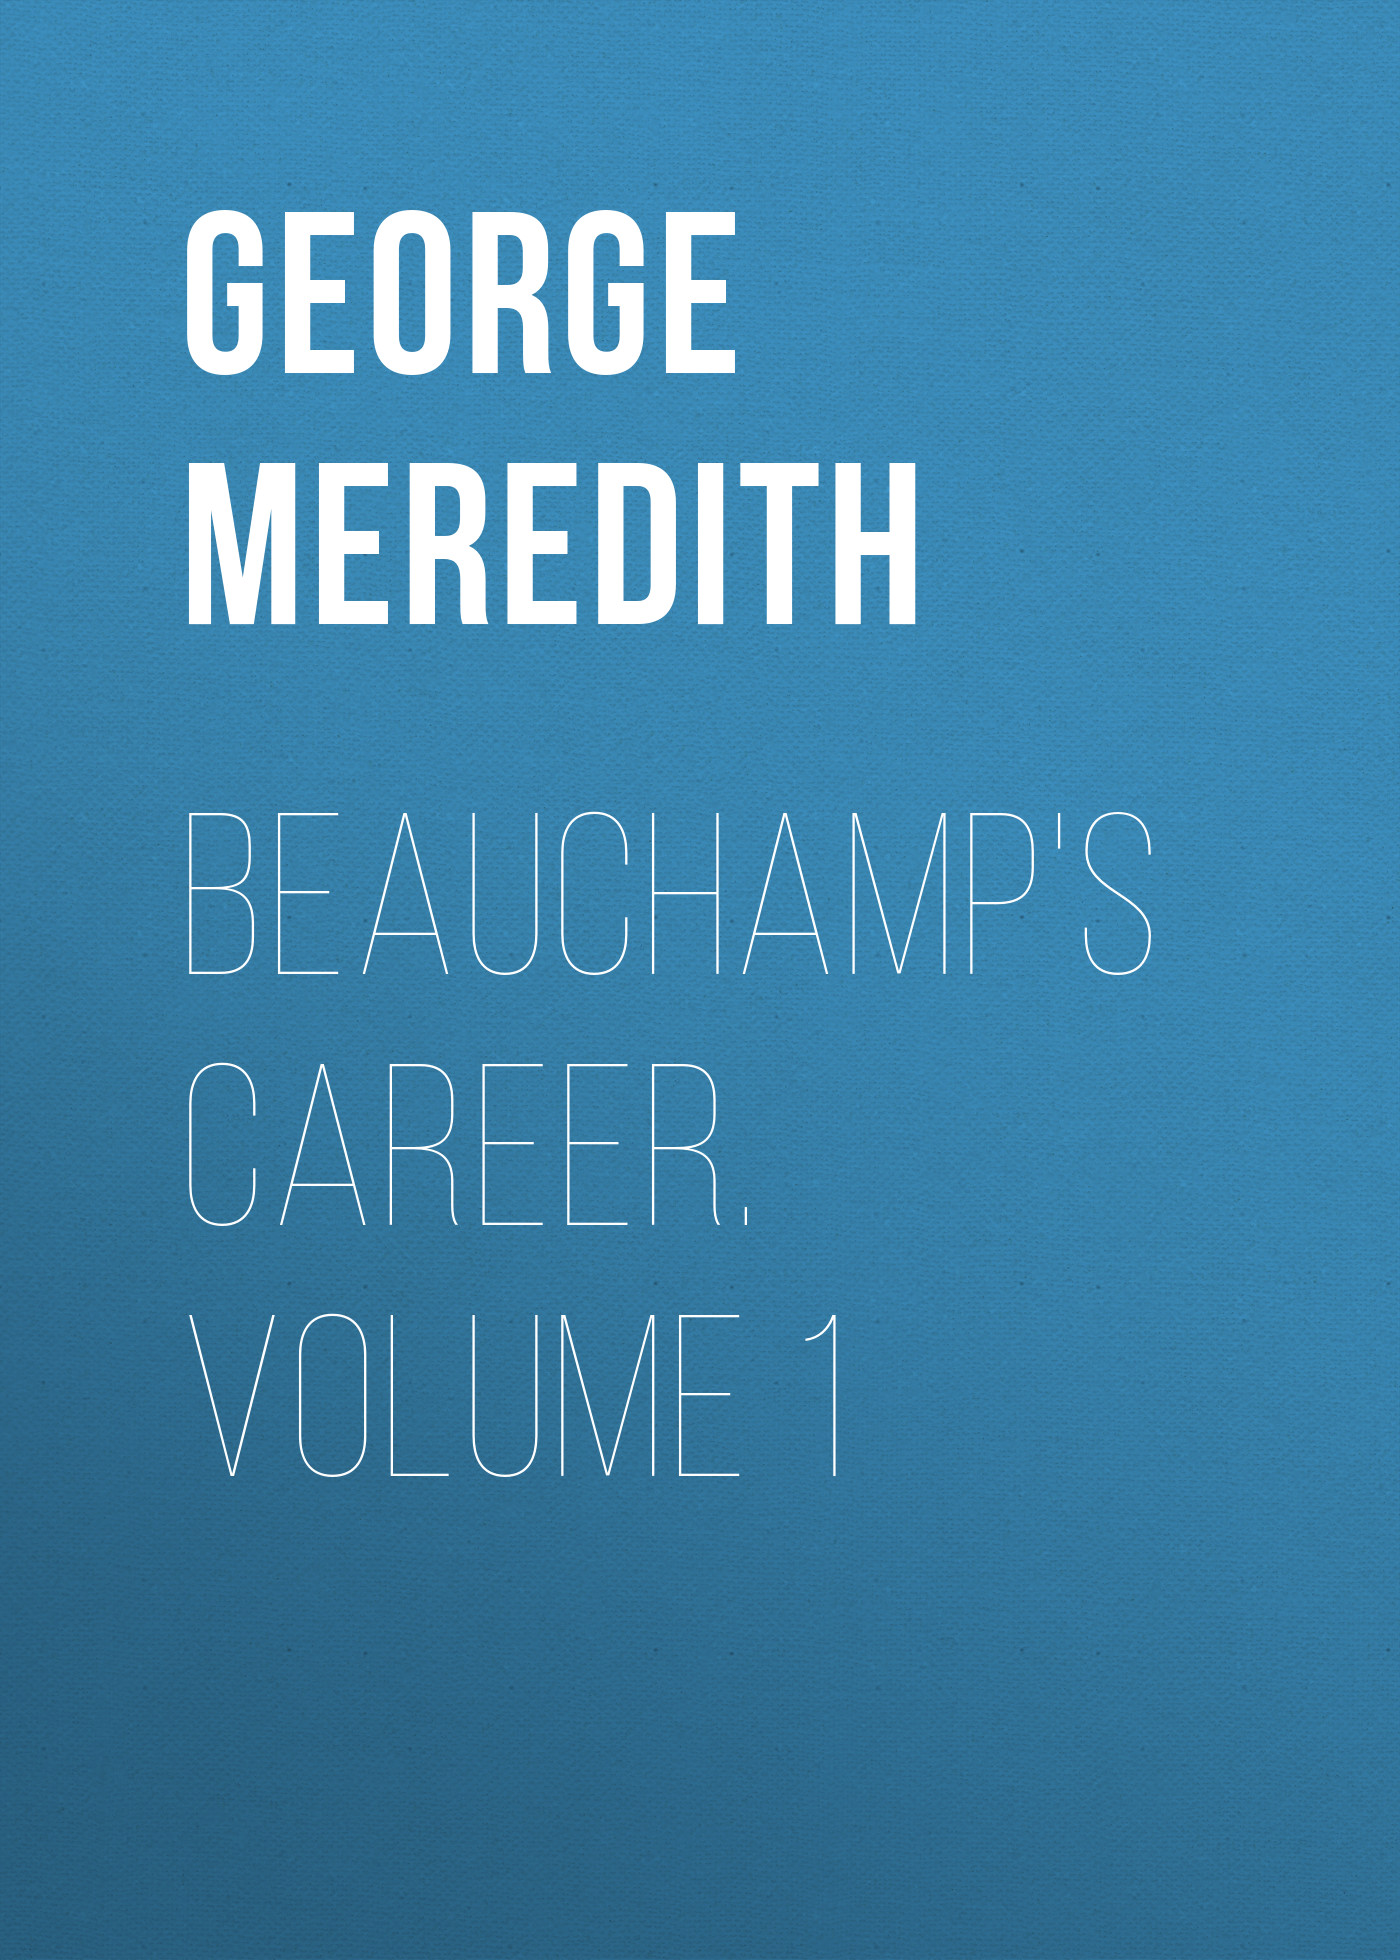 Книга Beauchamp's Career. Volume 1 из серии , созданная George Meredith, может относится к жанру Зарубежная классика, Литература 19 века, Зарубежная старинная литература. Стоимость электронной книги Beauchamp's Career. Volume 1 с идентификатором 36096285 составляет 0 руб.